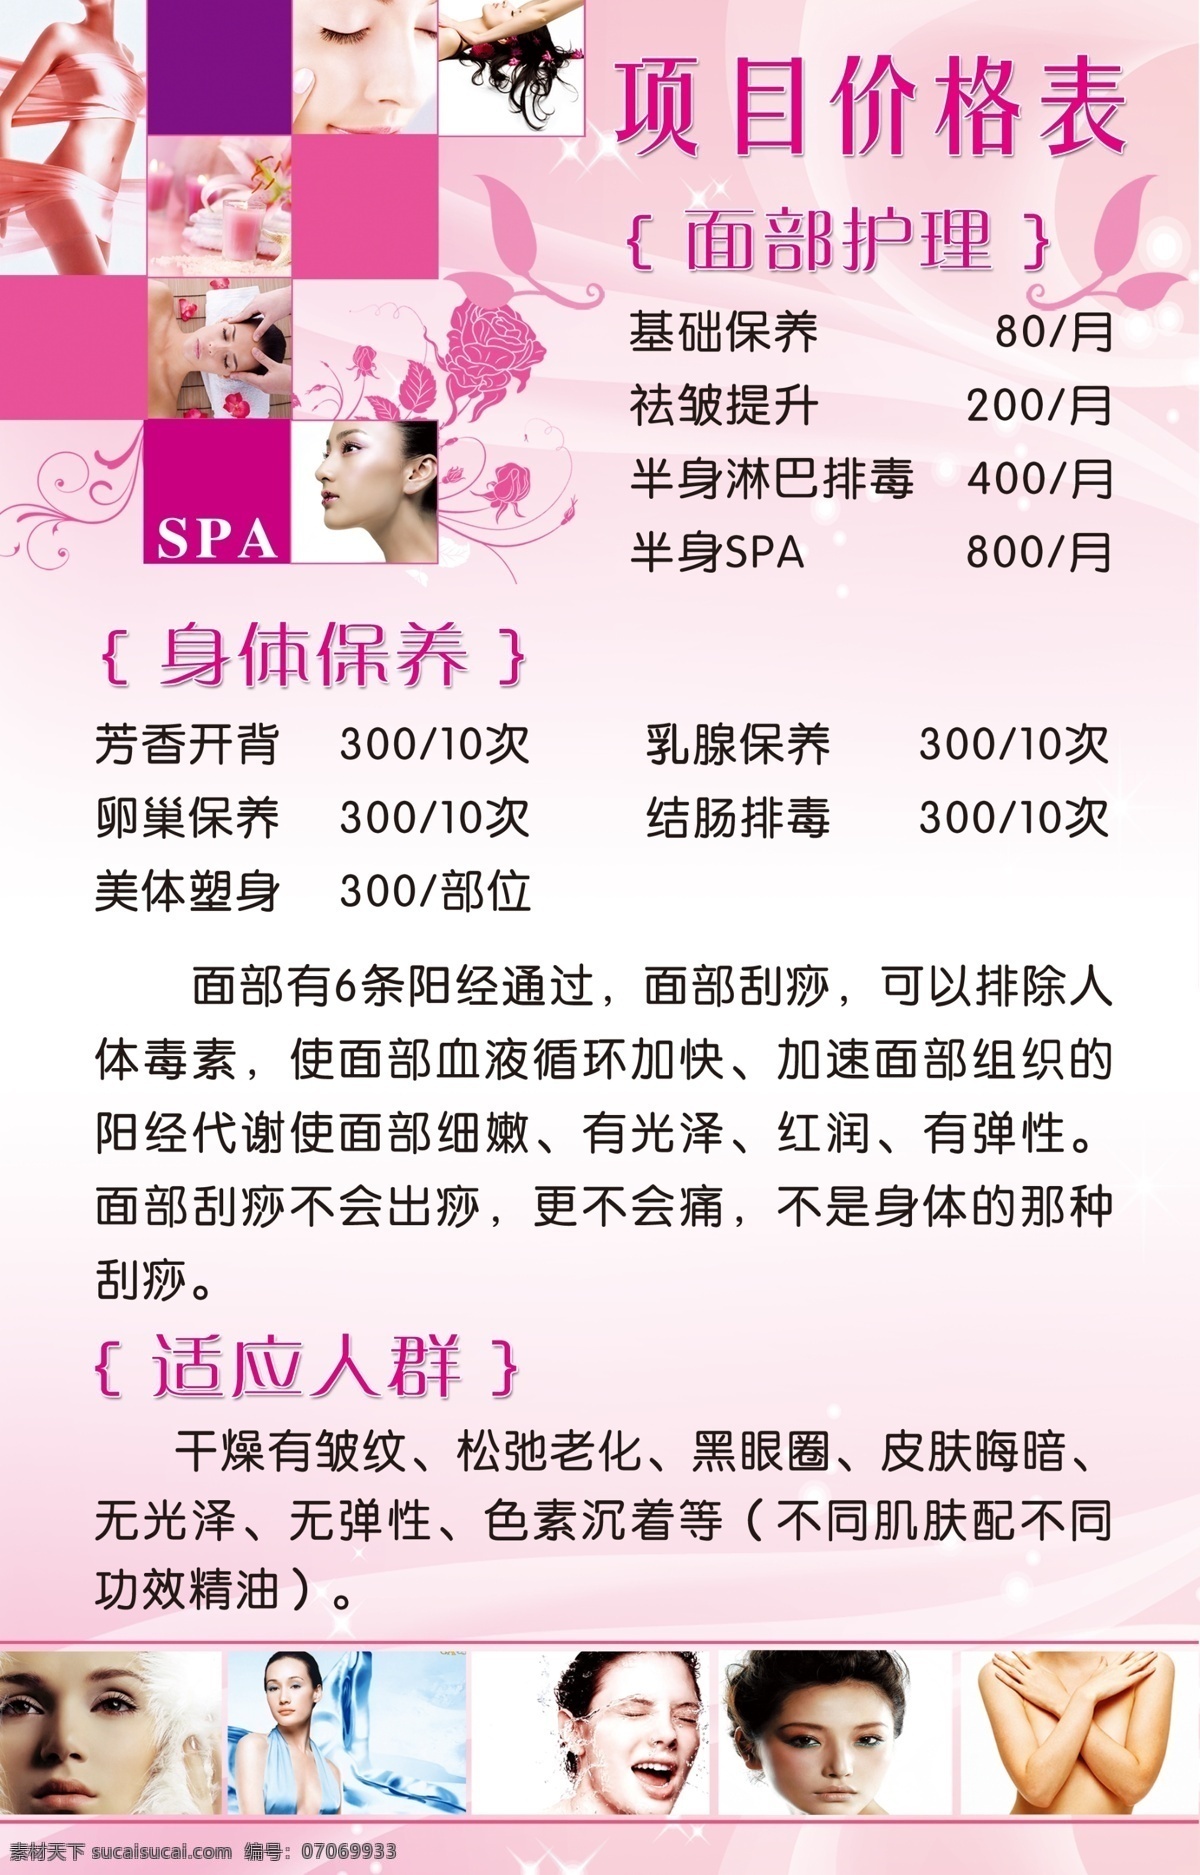 面部 护理 价格表 粉色背景 花纹 花边 面部照片 广告设计模板 源文件